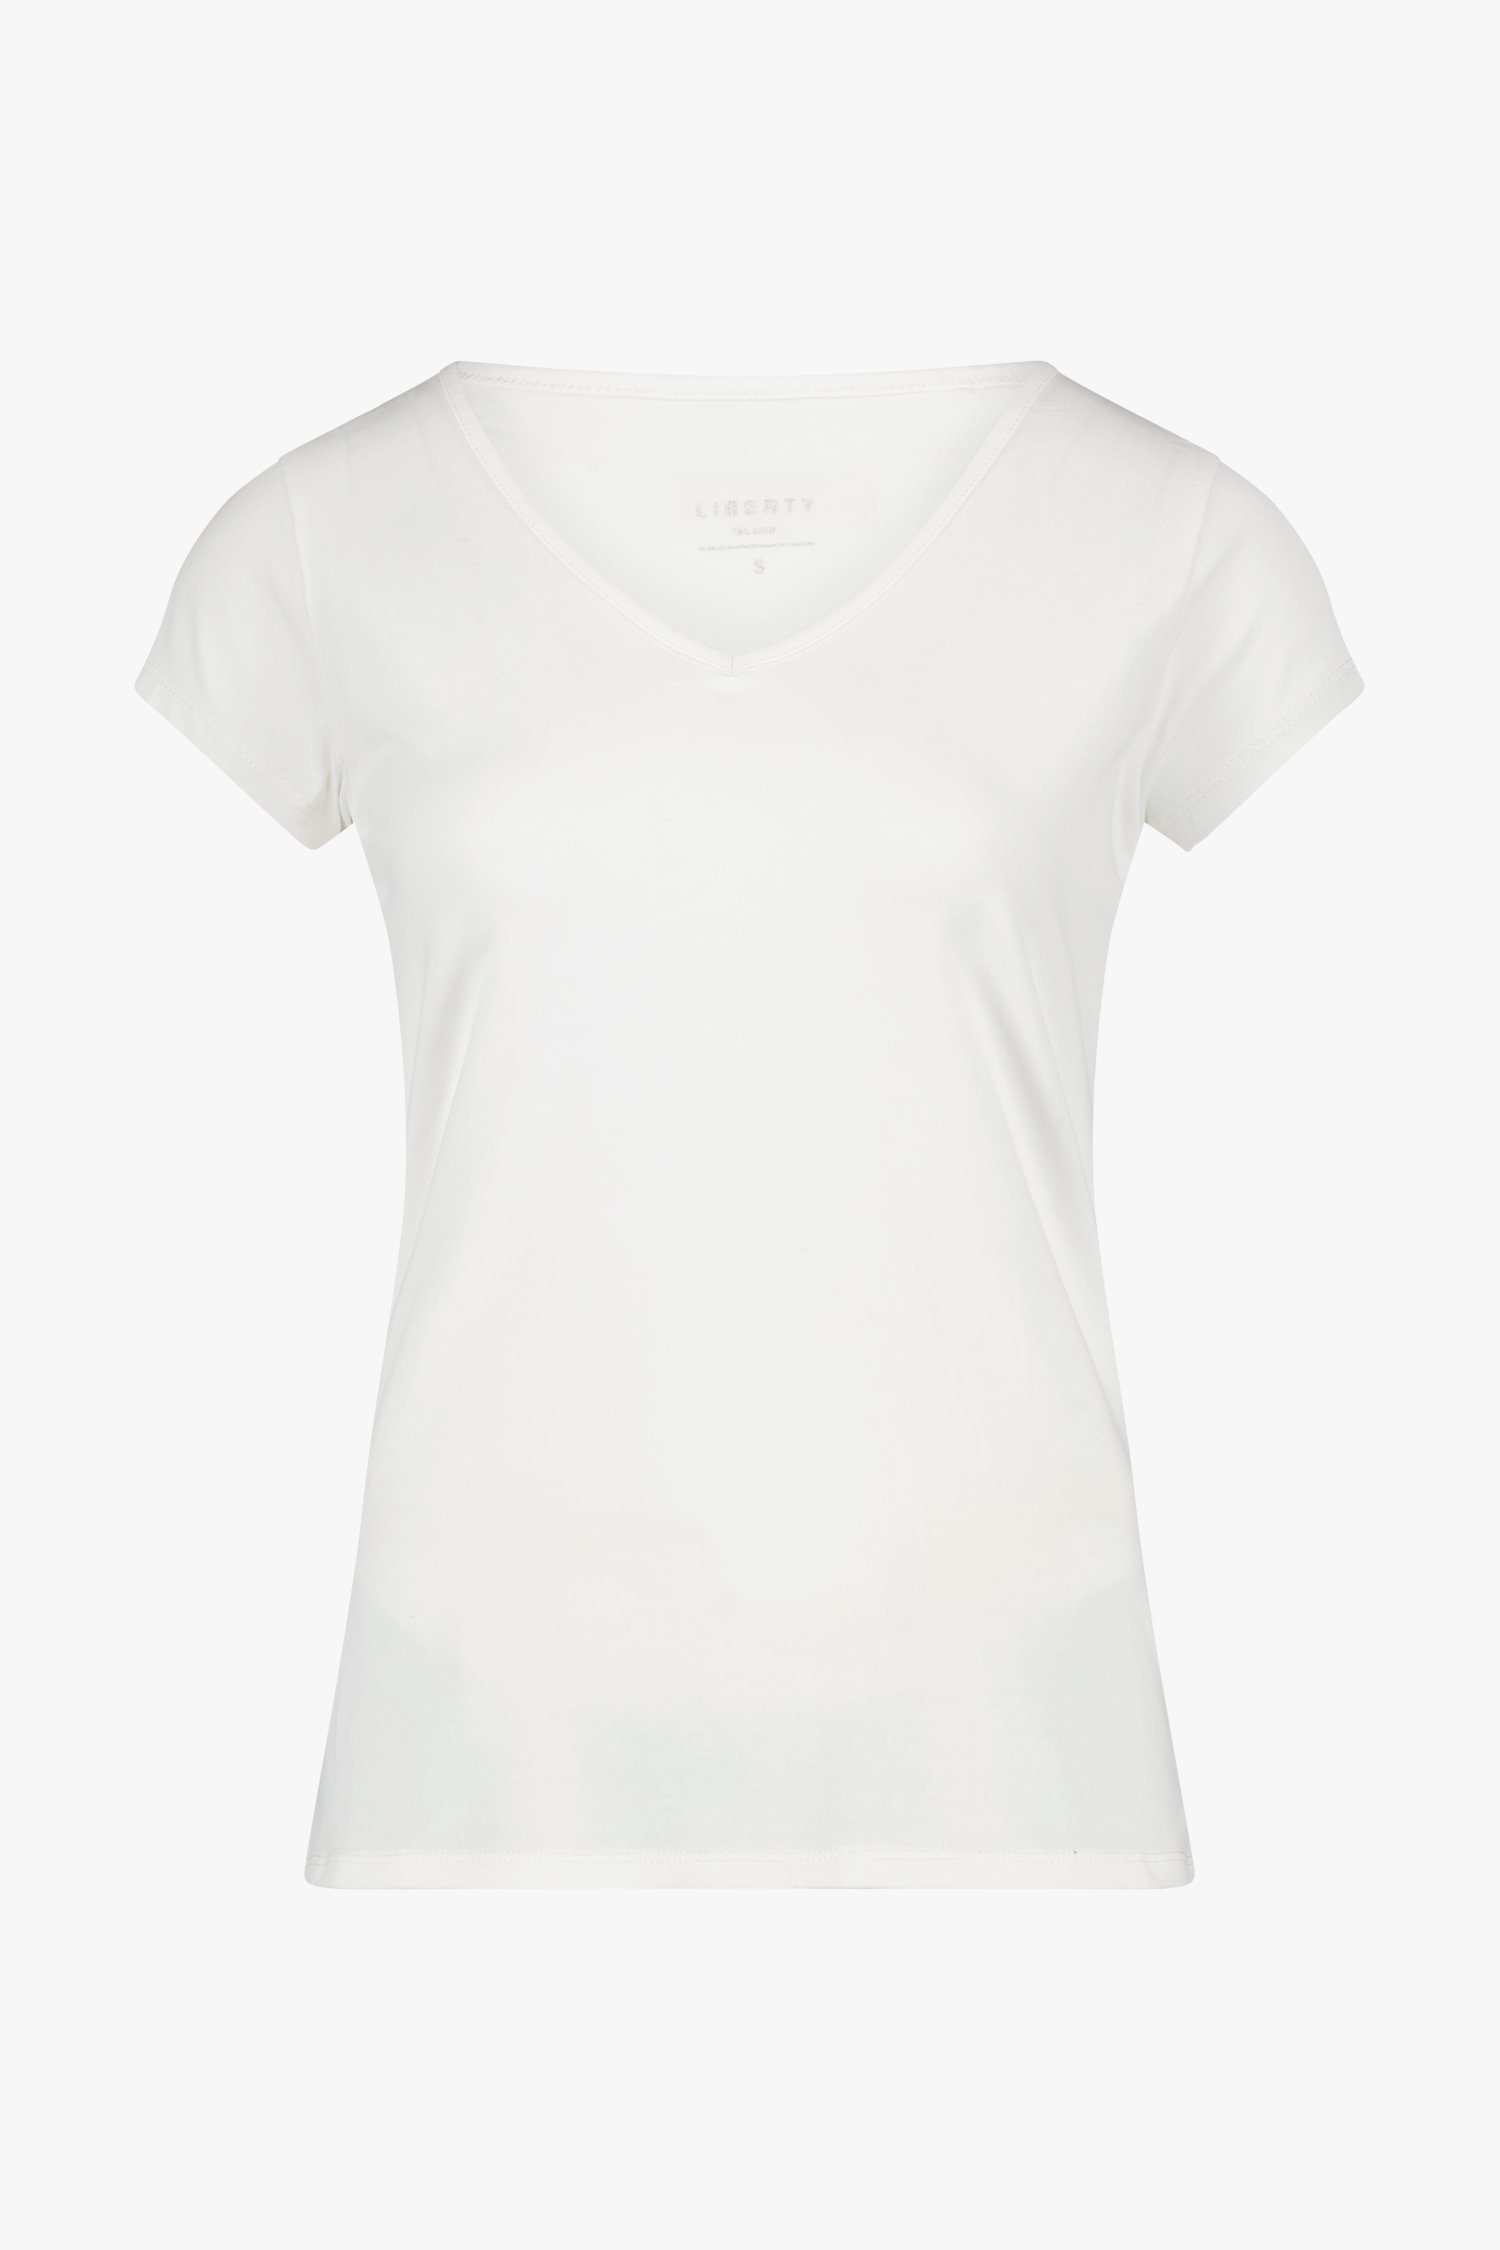 T-shirt blanc simple avec col en V de Liberty Island pour Femmes